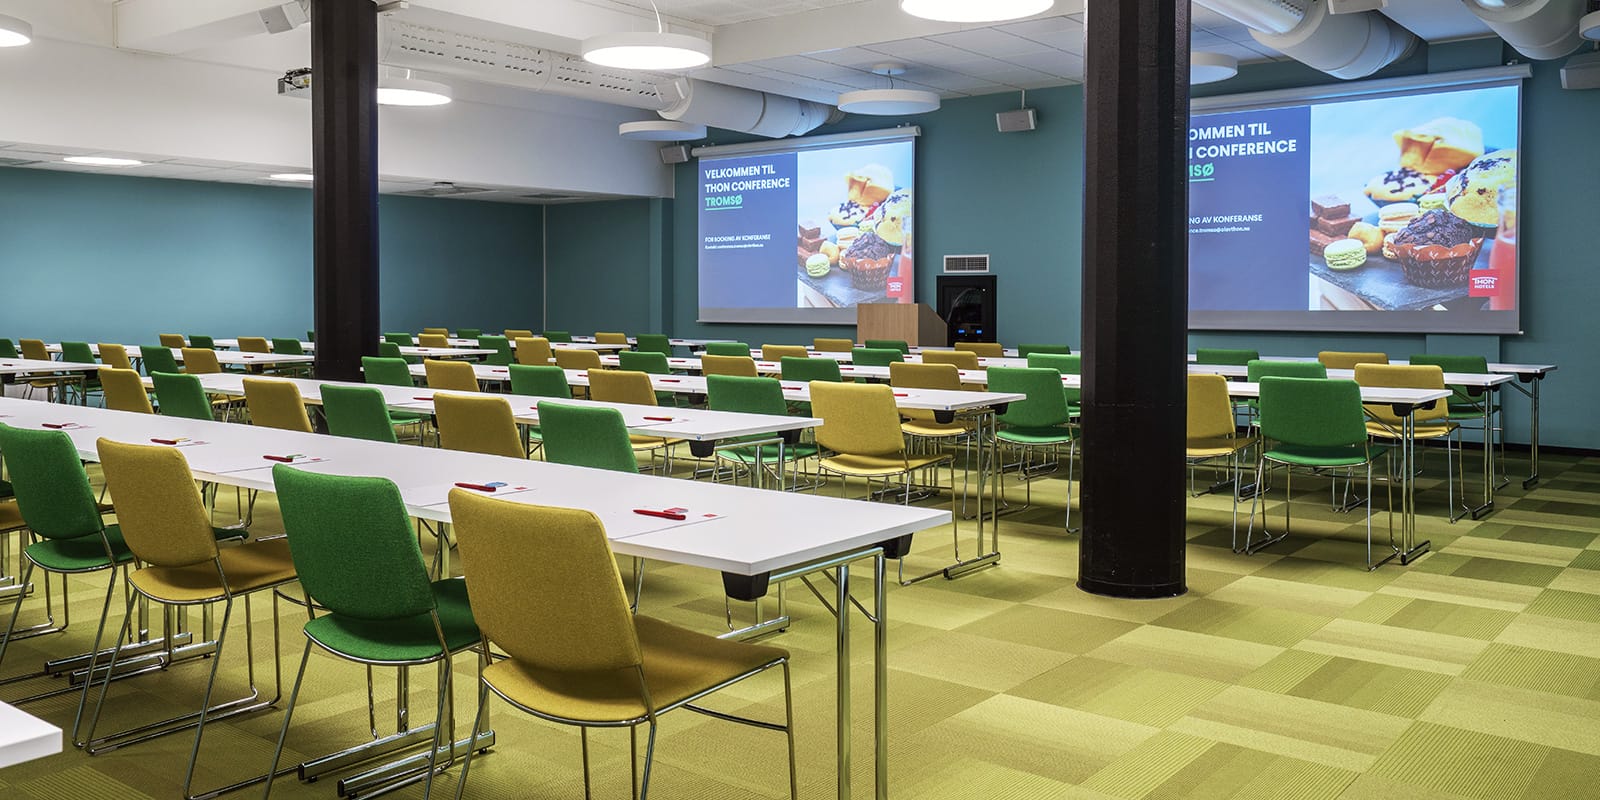 Konferenssalen Kvaløya med plats för 160 personer i biomöblering